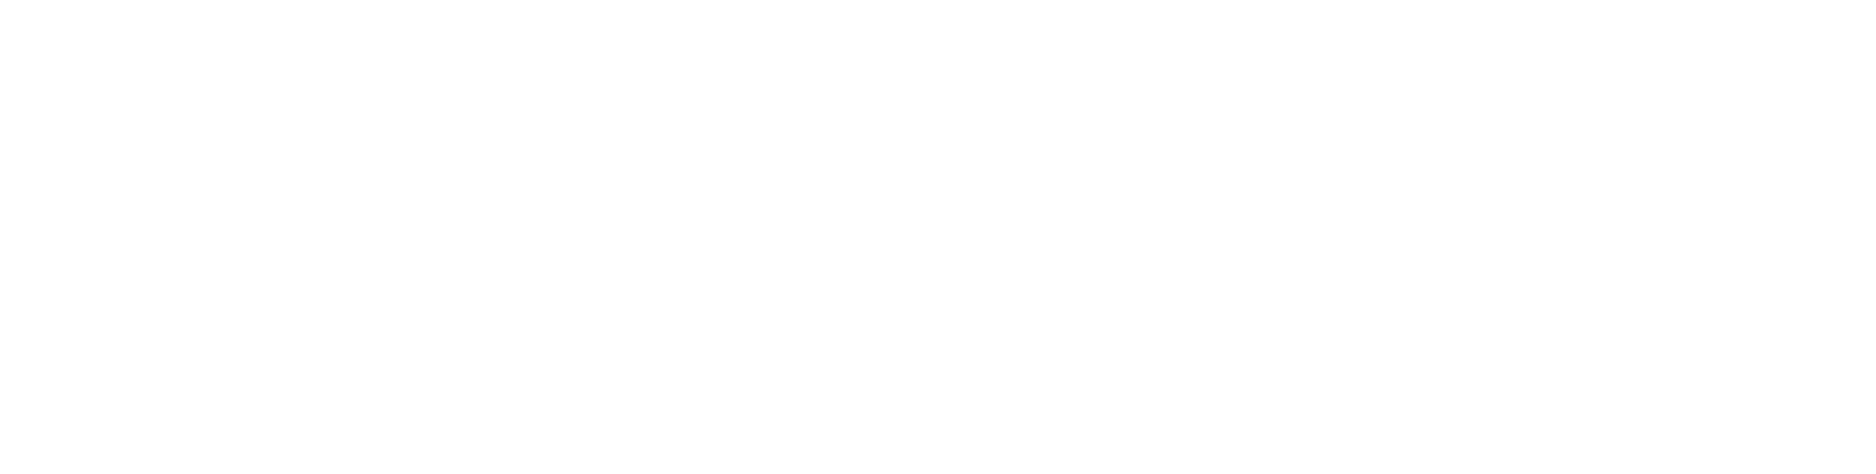 Hattie's Fine Coffee logo scroll